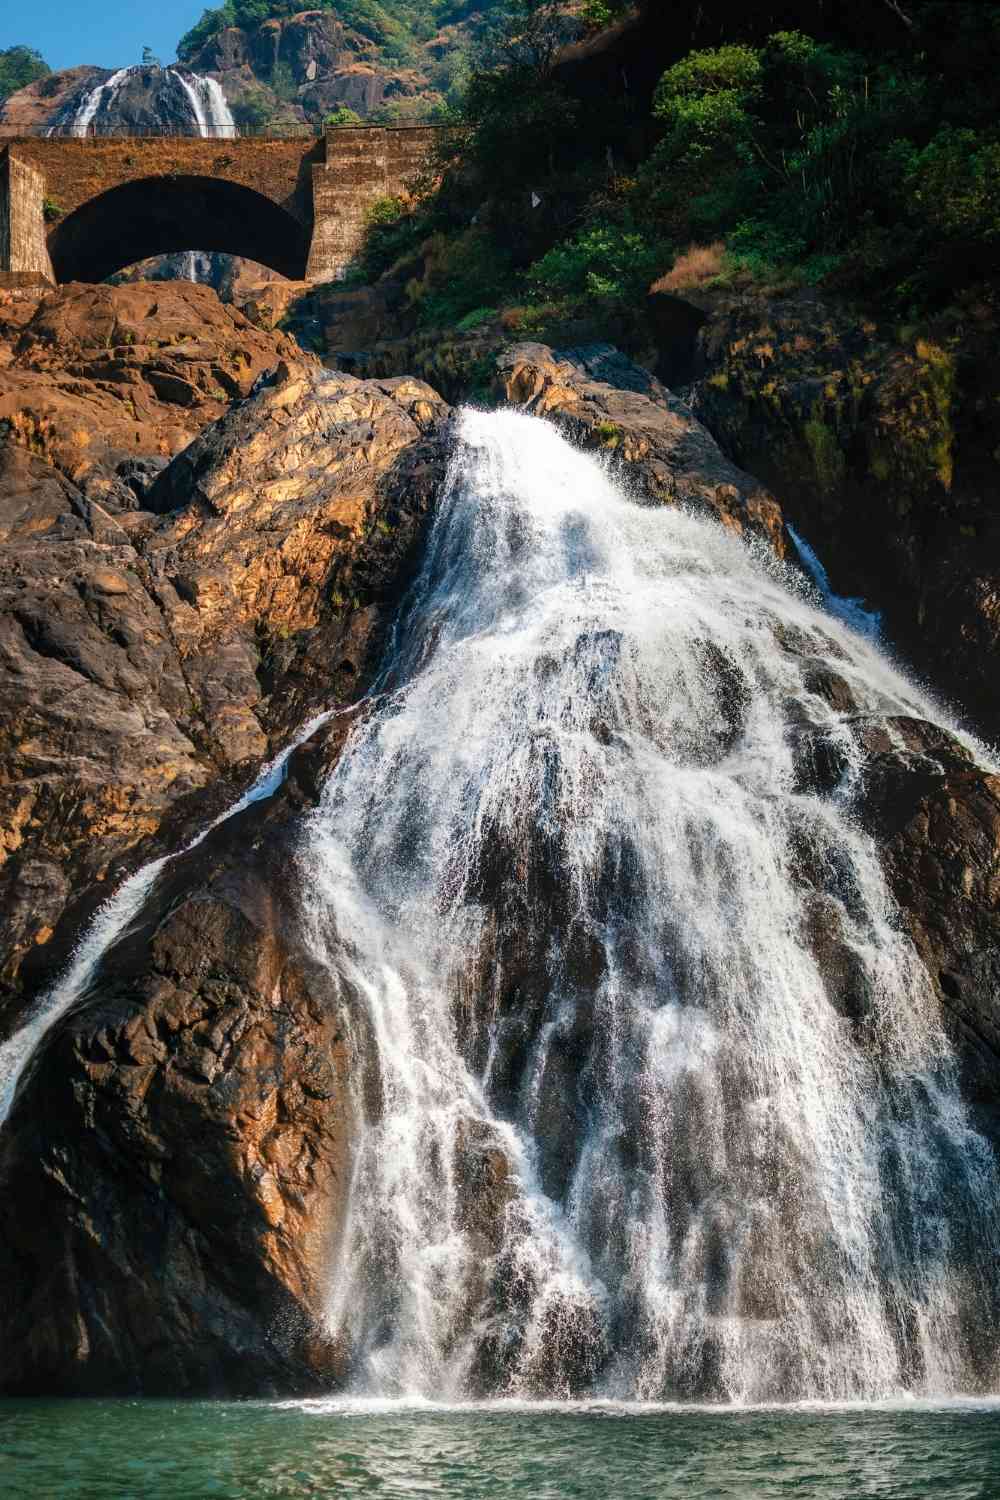 Dudhsagar waterfall in Goa